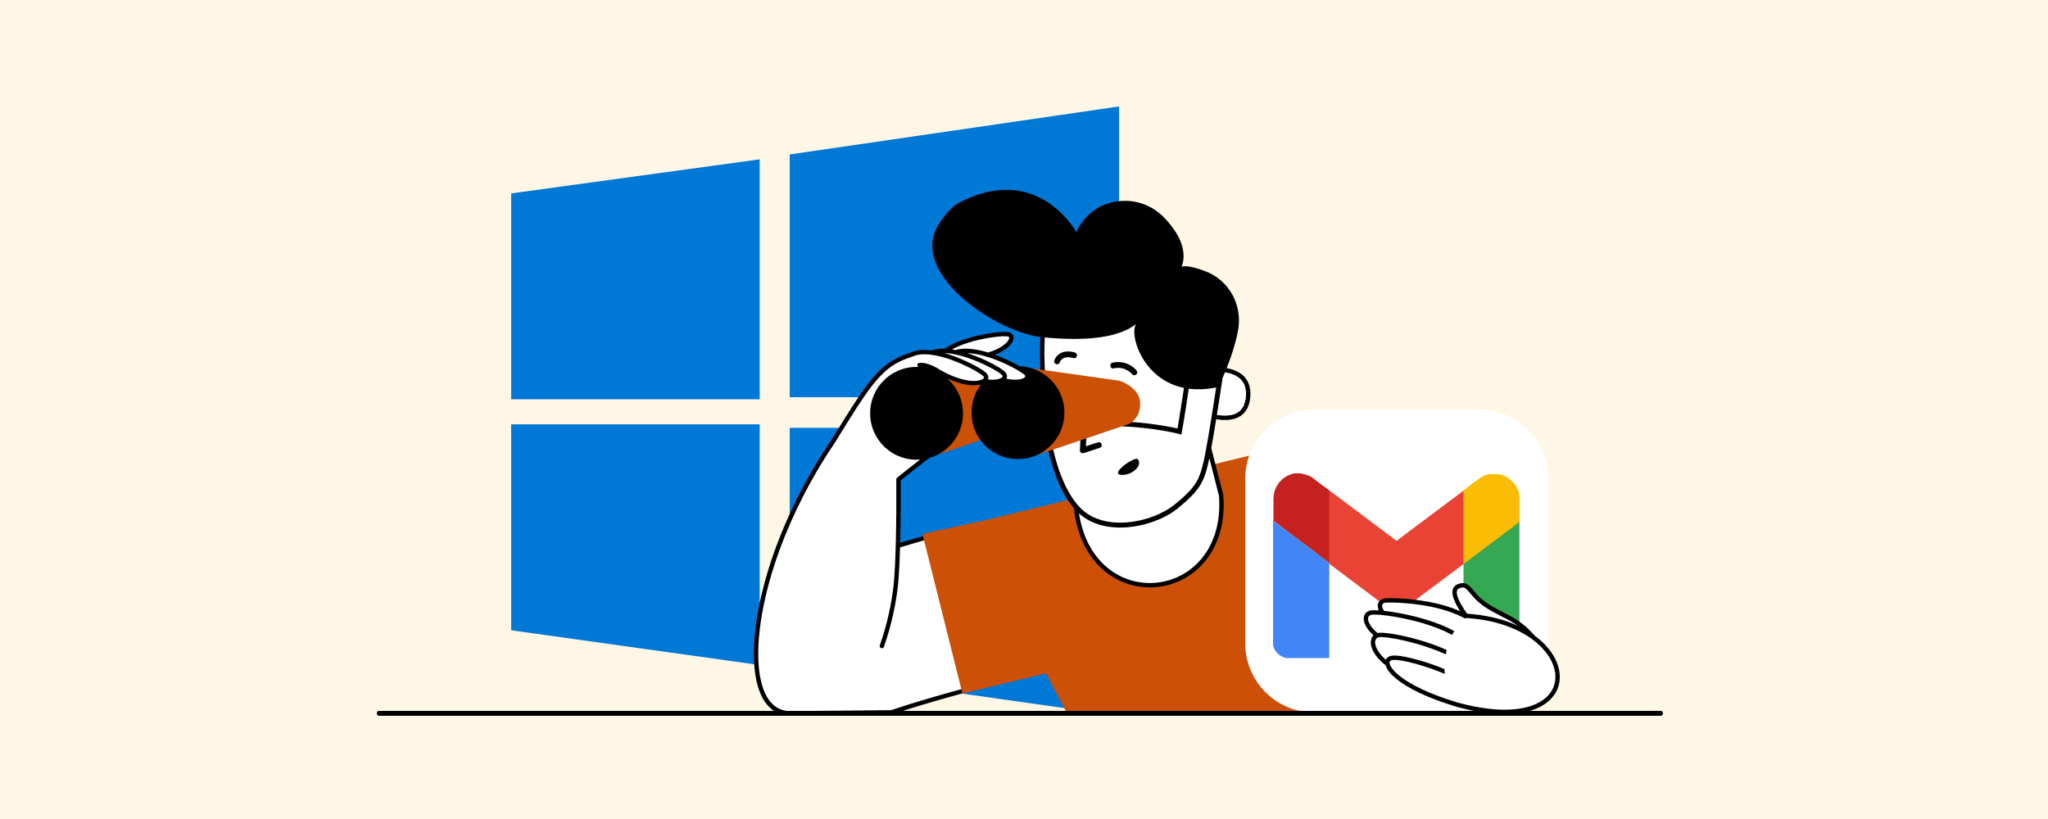 Gmail está a punto de cambiar, así será a partir de ahora el correo  electrónico de Google